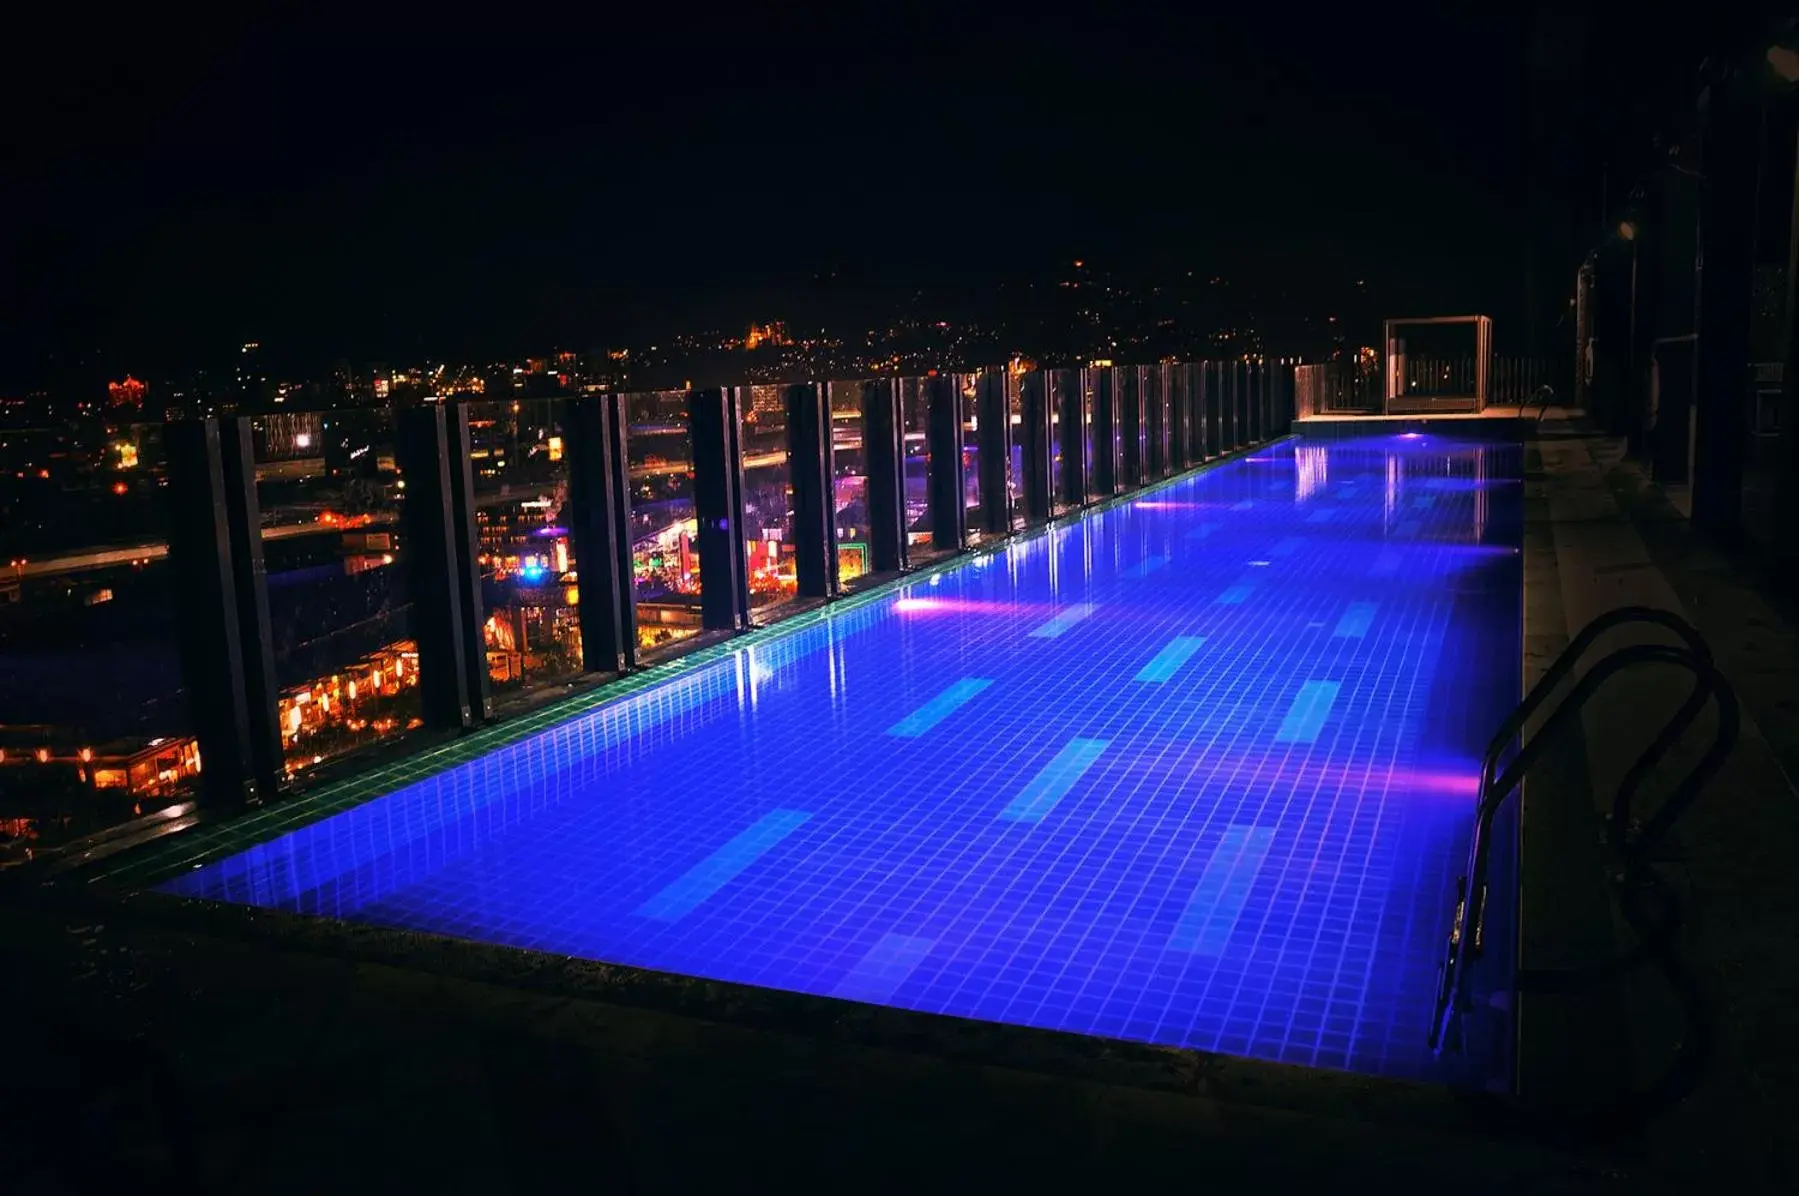 Swimming Pool in bai Hotel Cebu